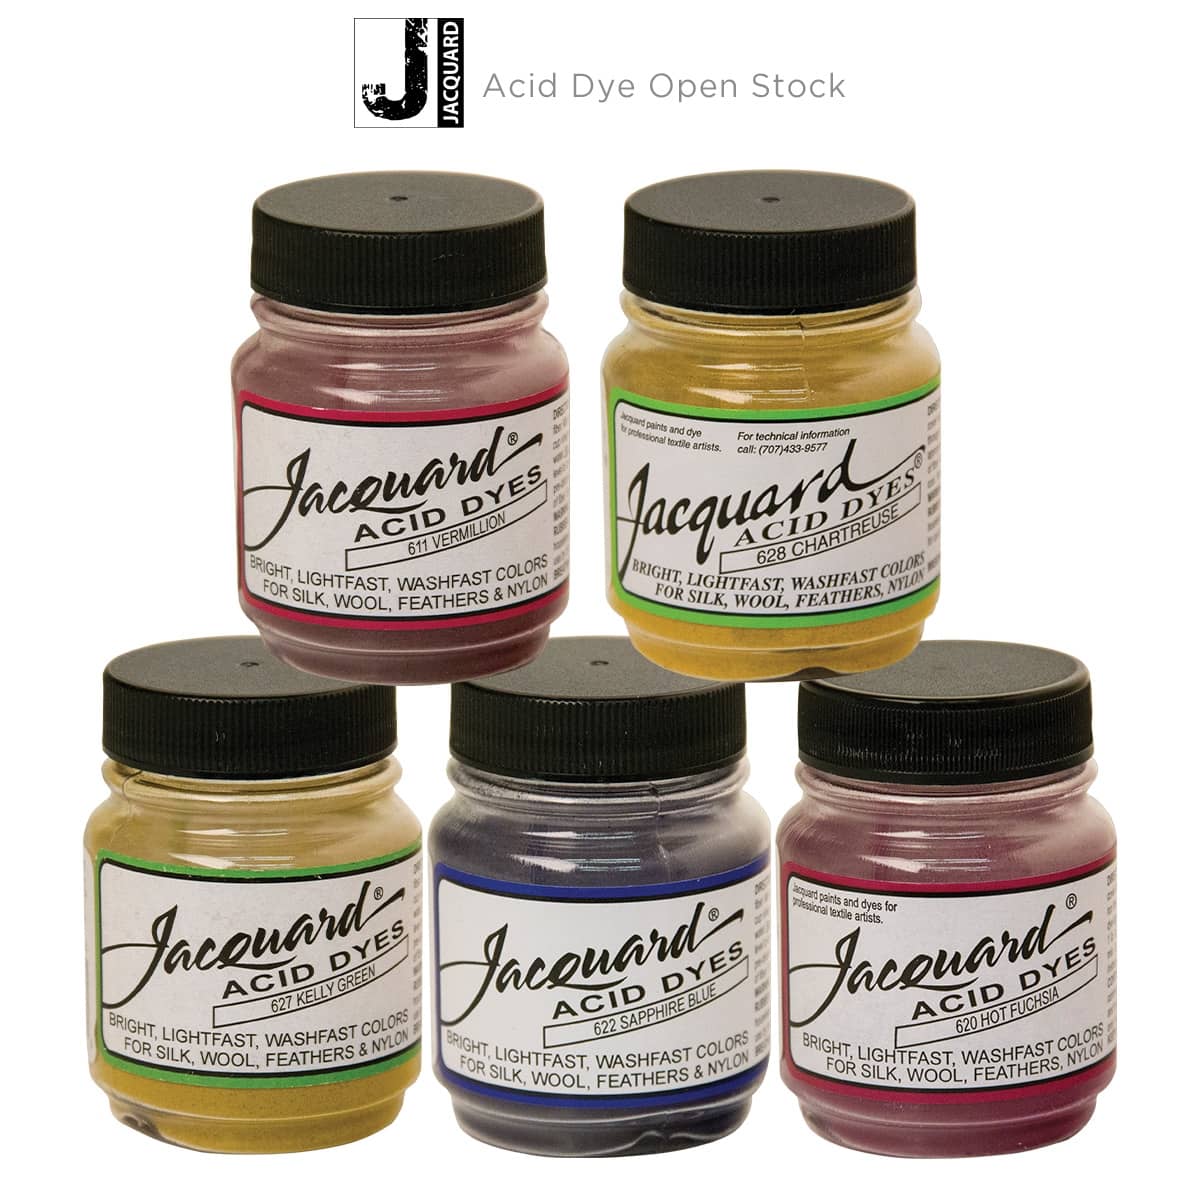 Dyes Jacquard Synthrapol 1quart for sale online